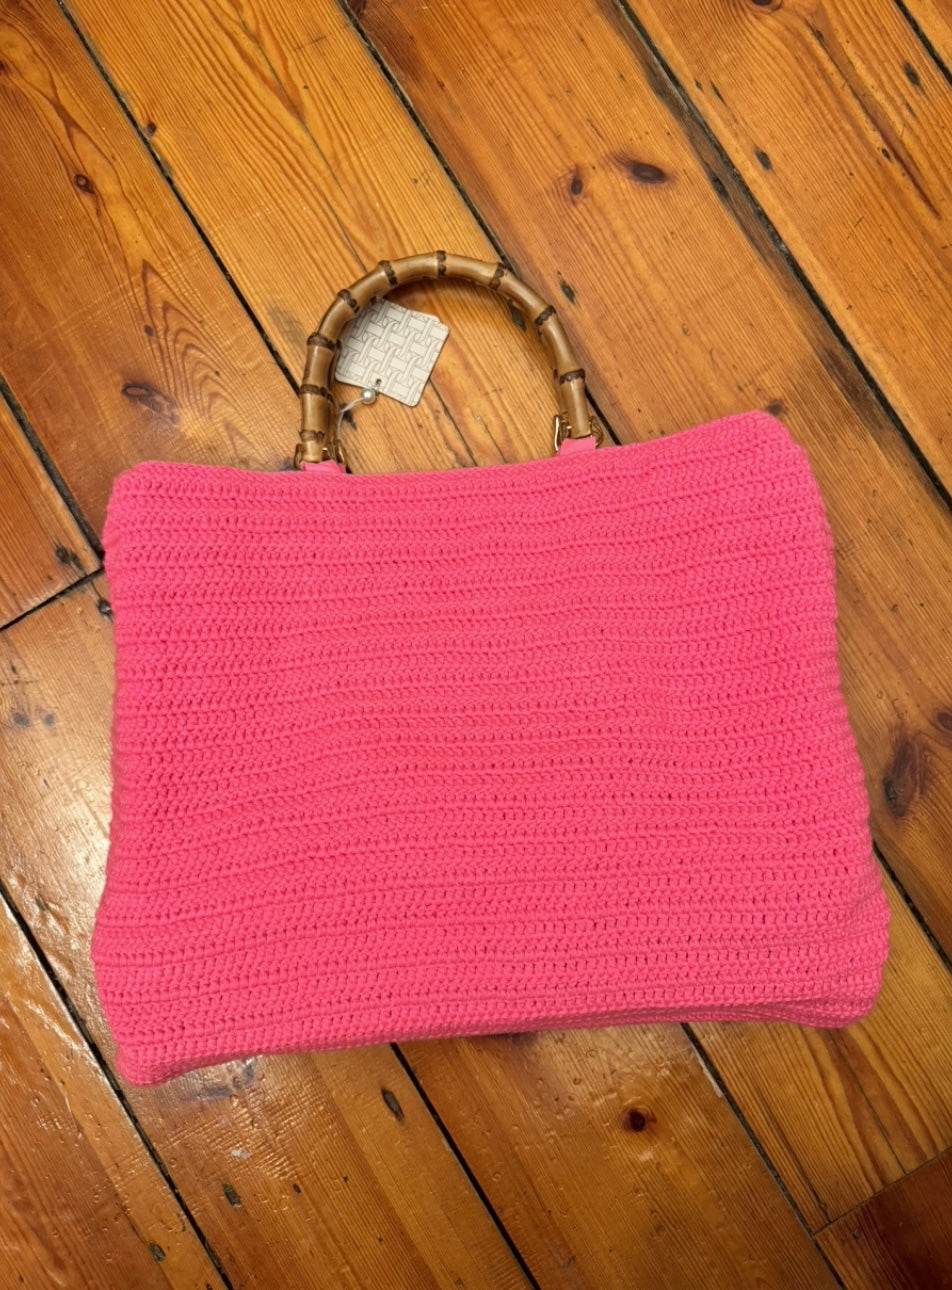 Interdee pink knitted rose beach summer bag